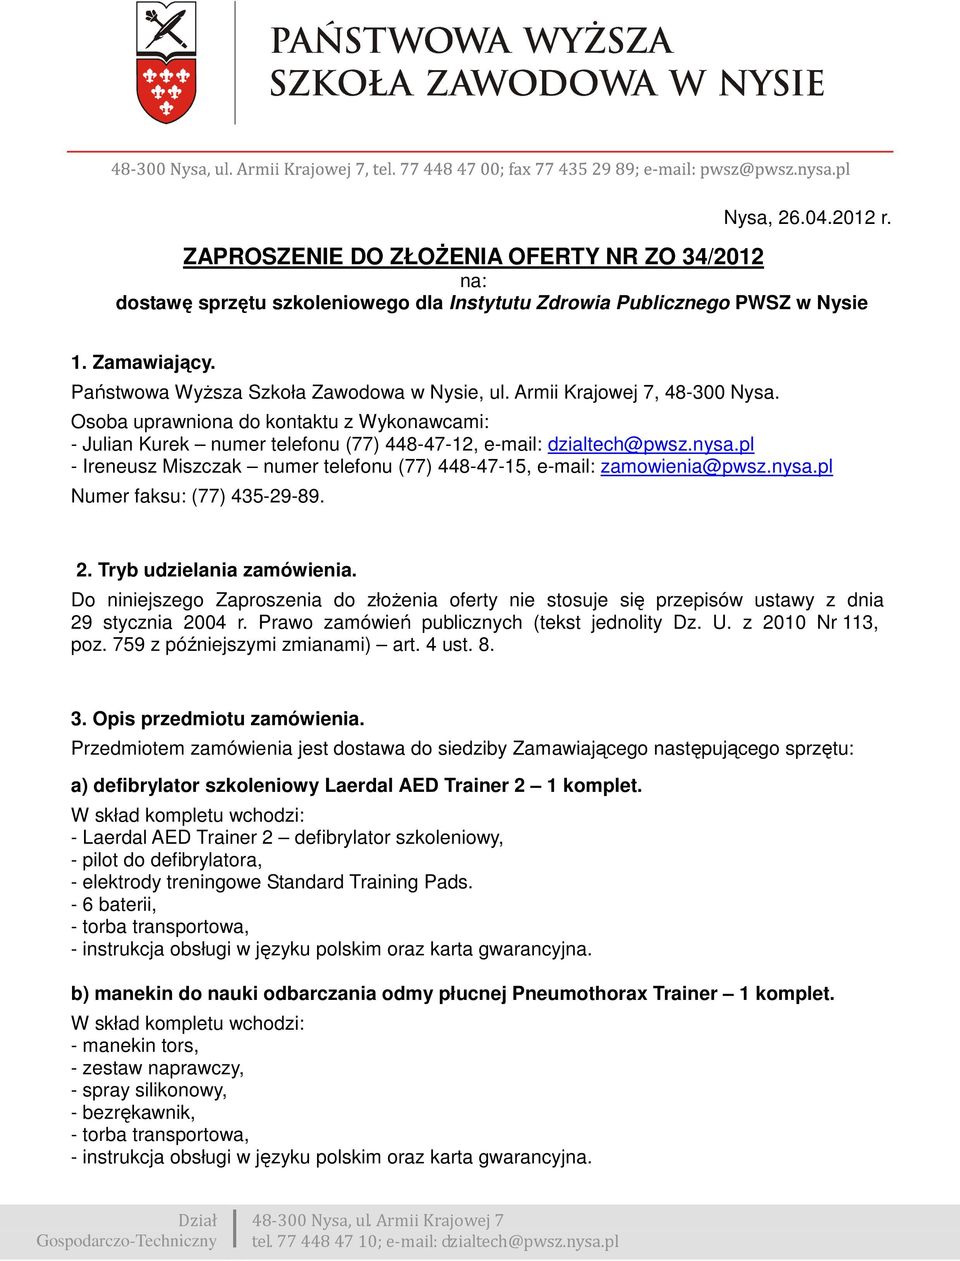 pl - Ireneusz Miszczak numer telefonu (77) 448-47-15, e-mail: zamowienia@pwsz.nysa.pl Numer faksu: (77) 435-29-89. 2. Tryb udzielania zamówienia.